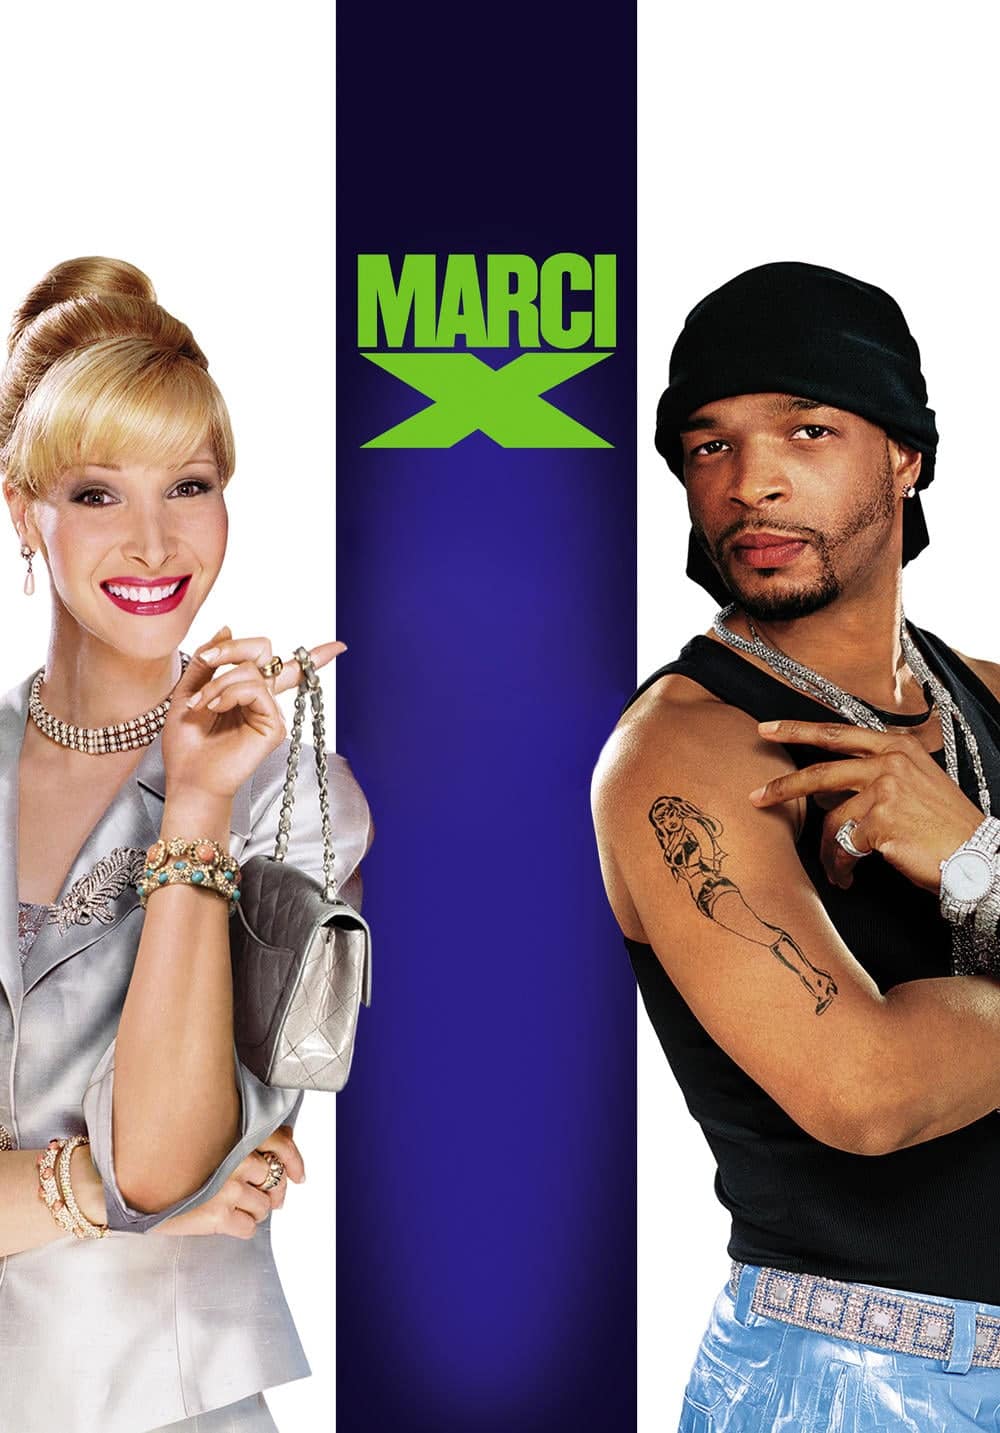 Plakat von "Marci X - Uptown Gets Down"